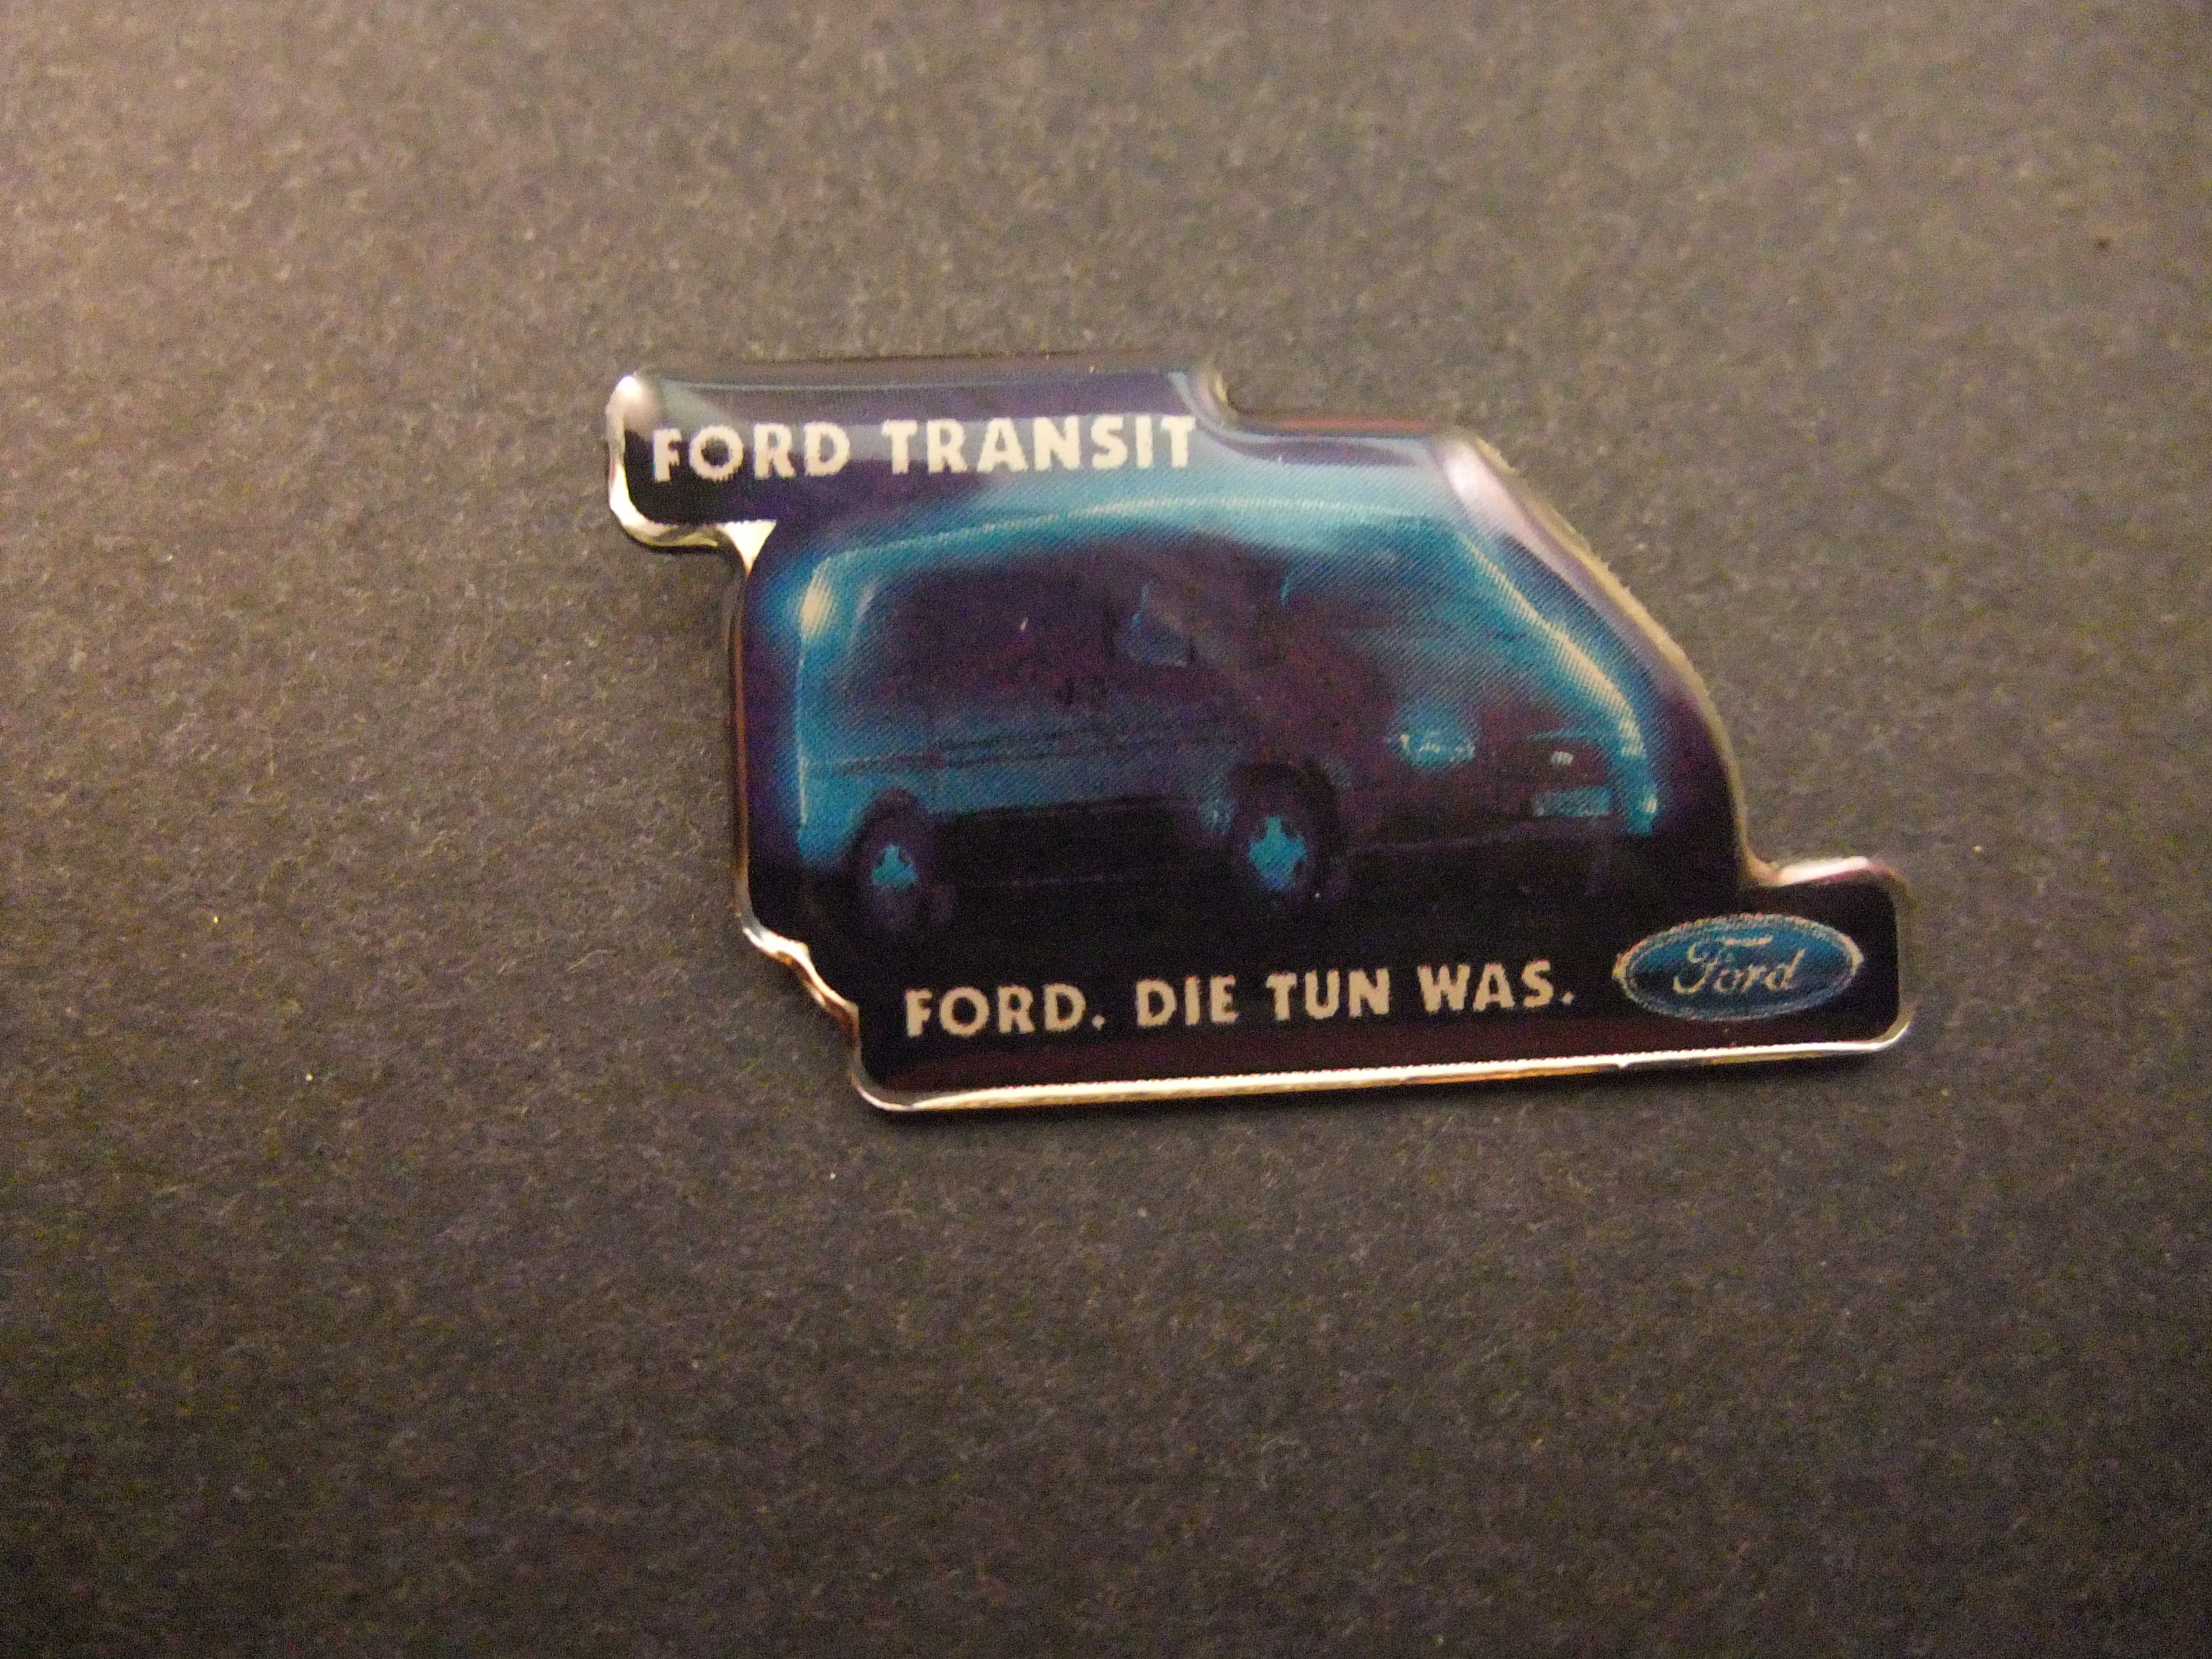 Ford Transit bedrijfswagen